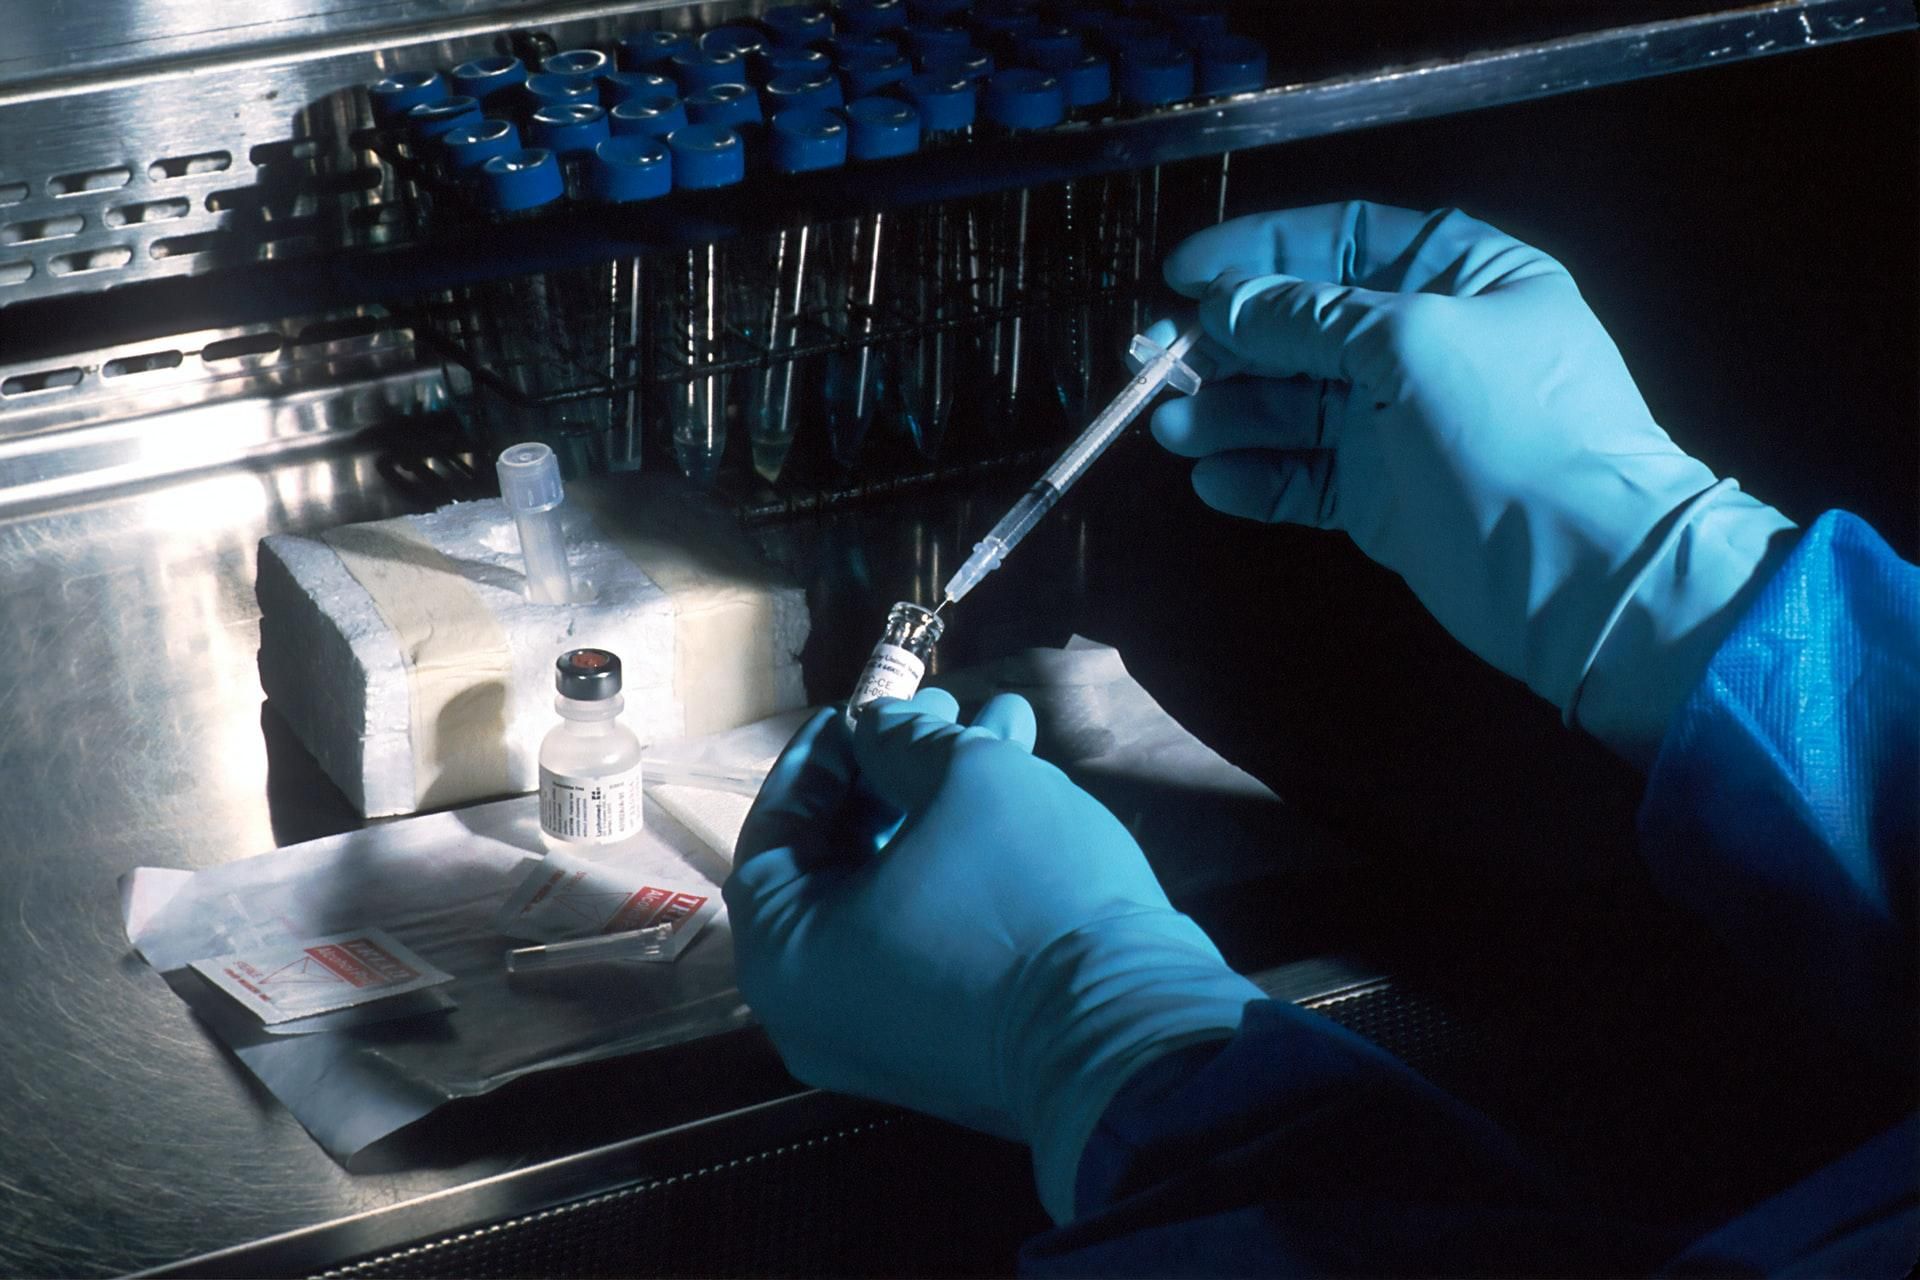 ІФА-тести на коронавірус: кому та для чого потрібно робити